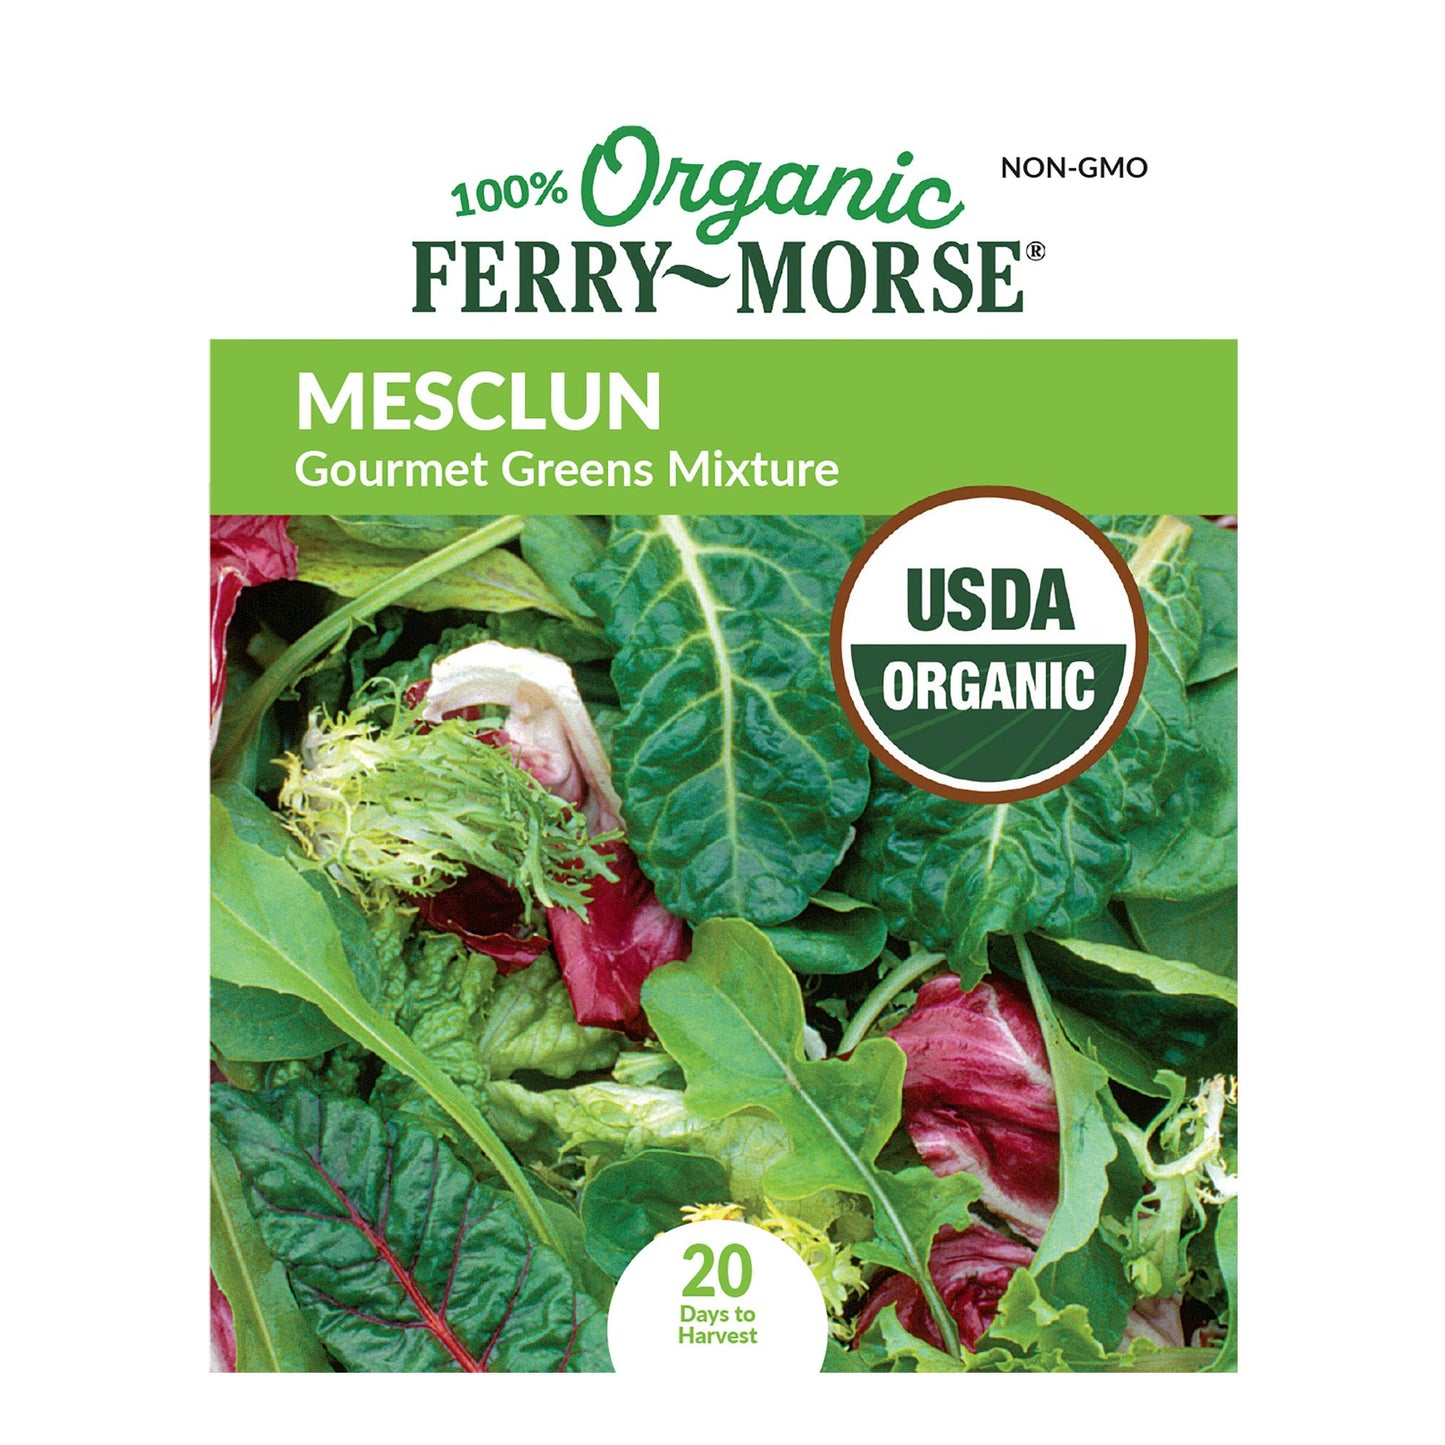 Mesclun, Gourmet Greens Mixture Organic Seeds